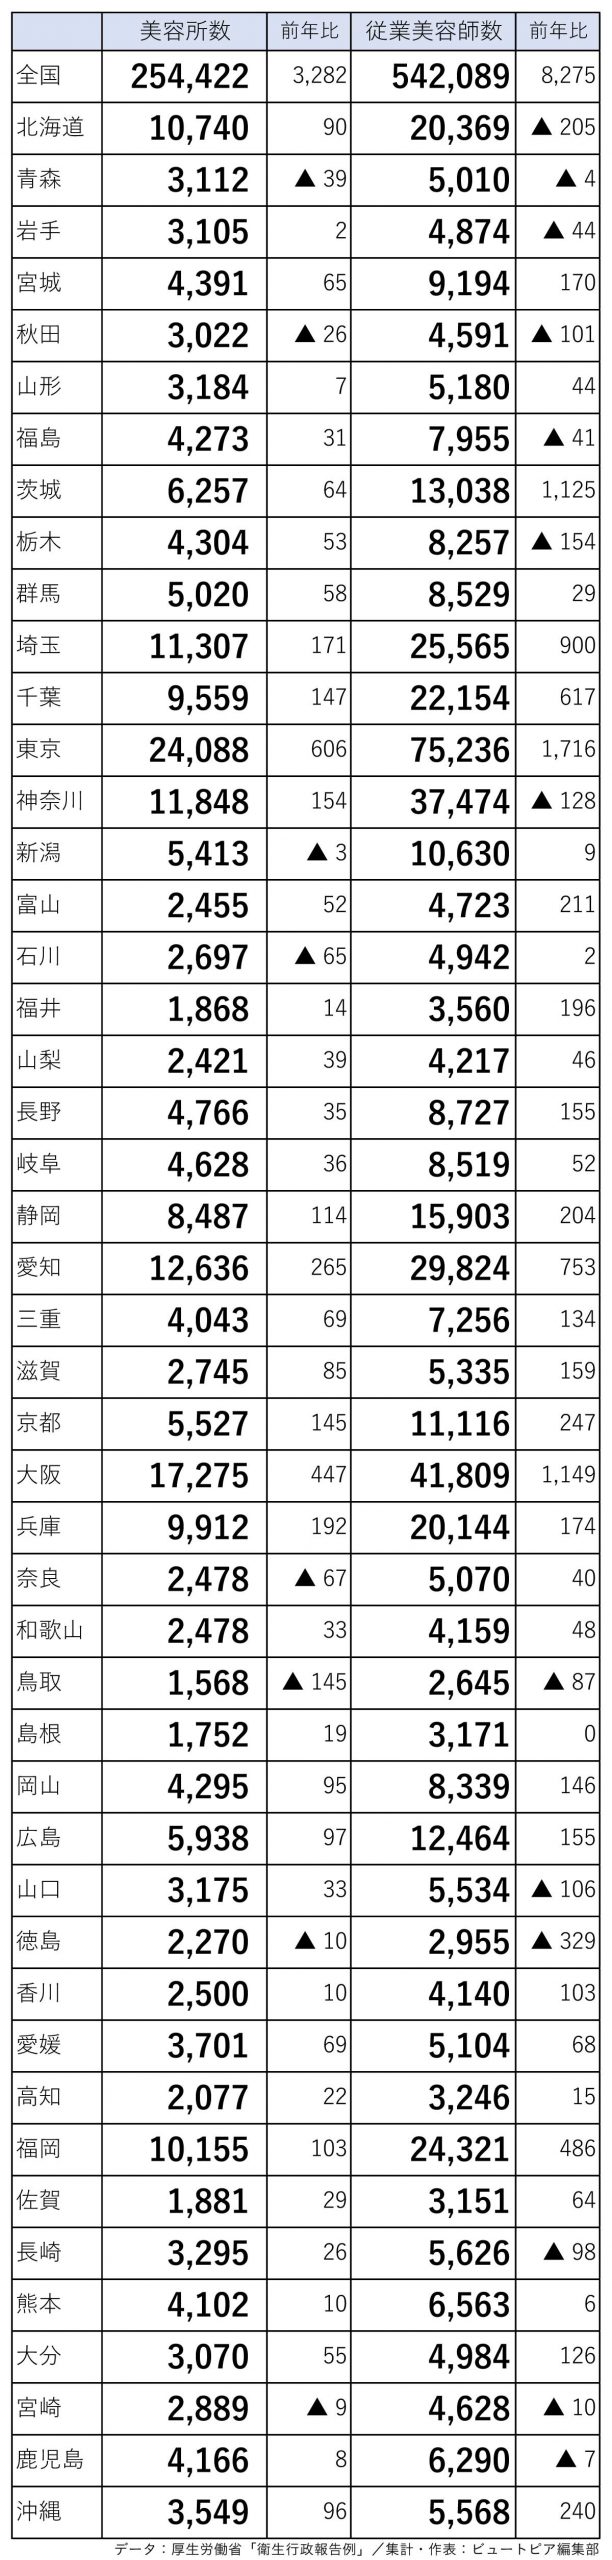 美容室店舗数と従業美容師数（厚生労働省「衛生行政報告例」令和元年分・2021年2月発表）